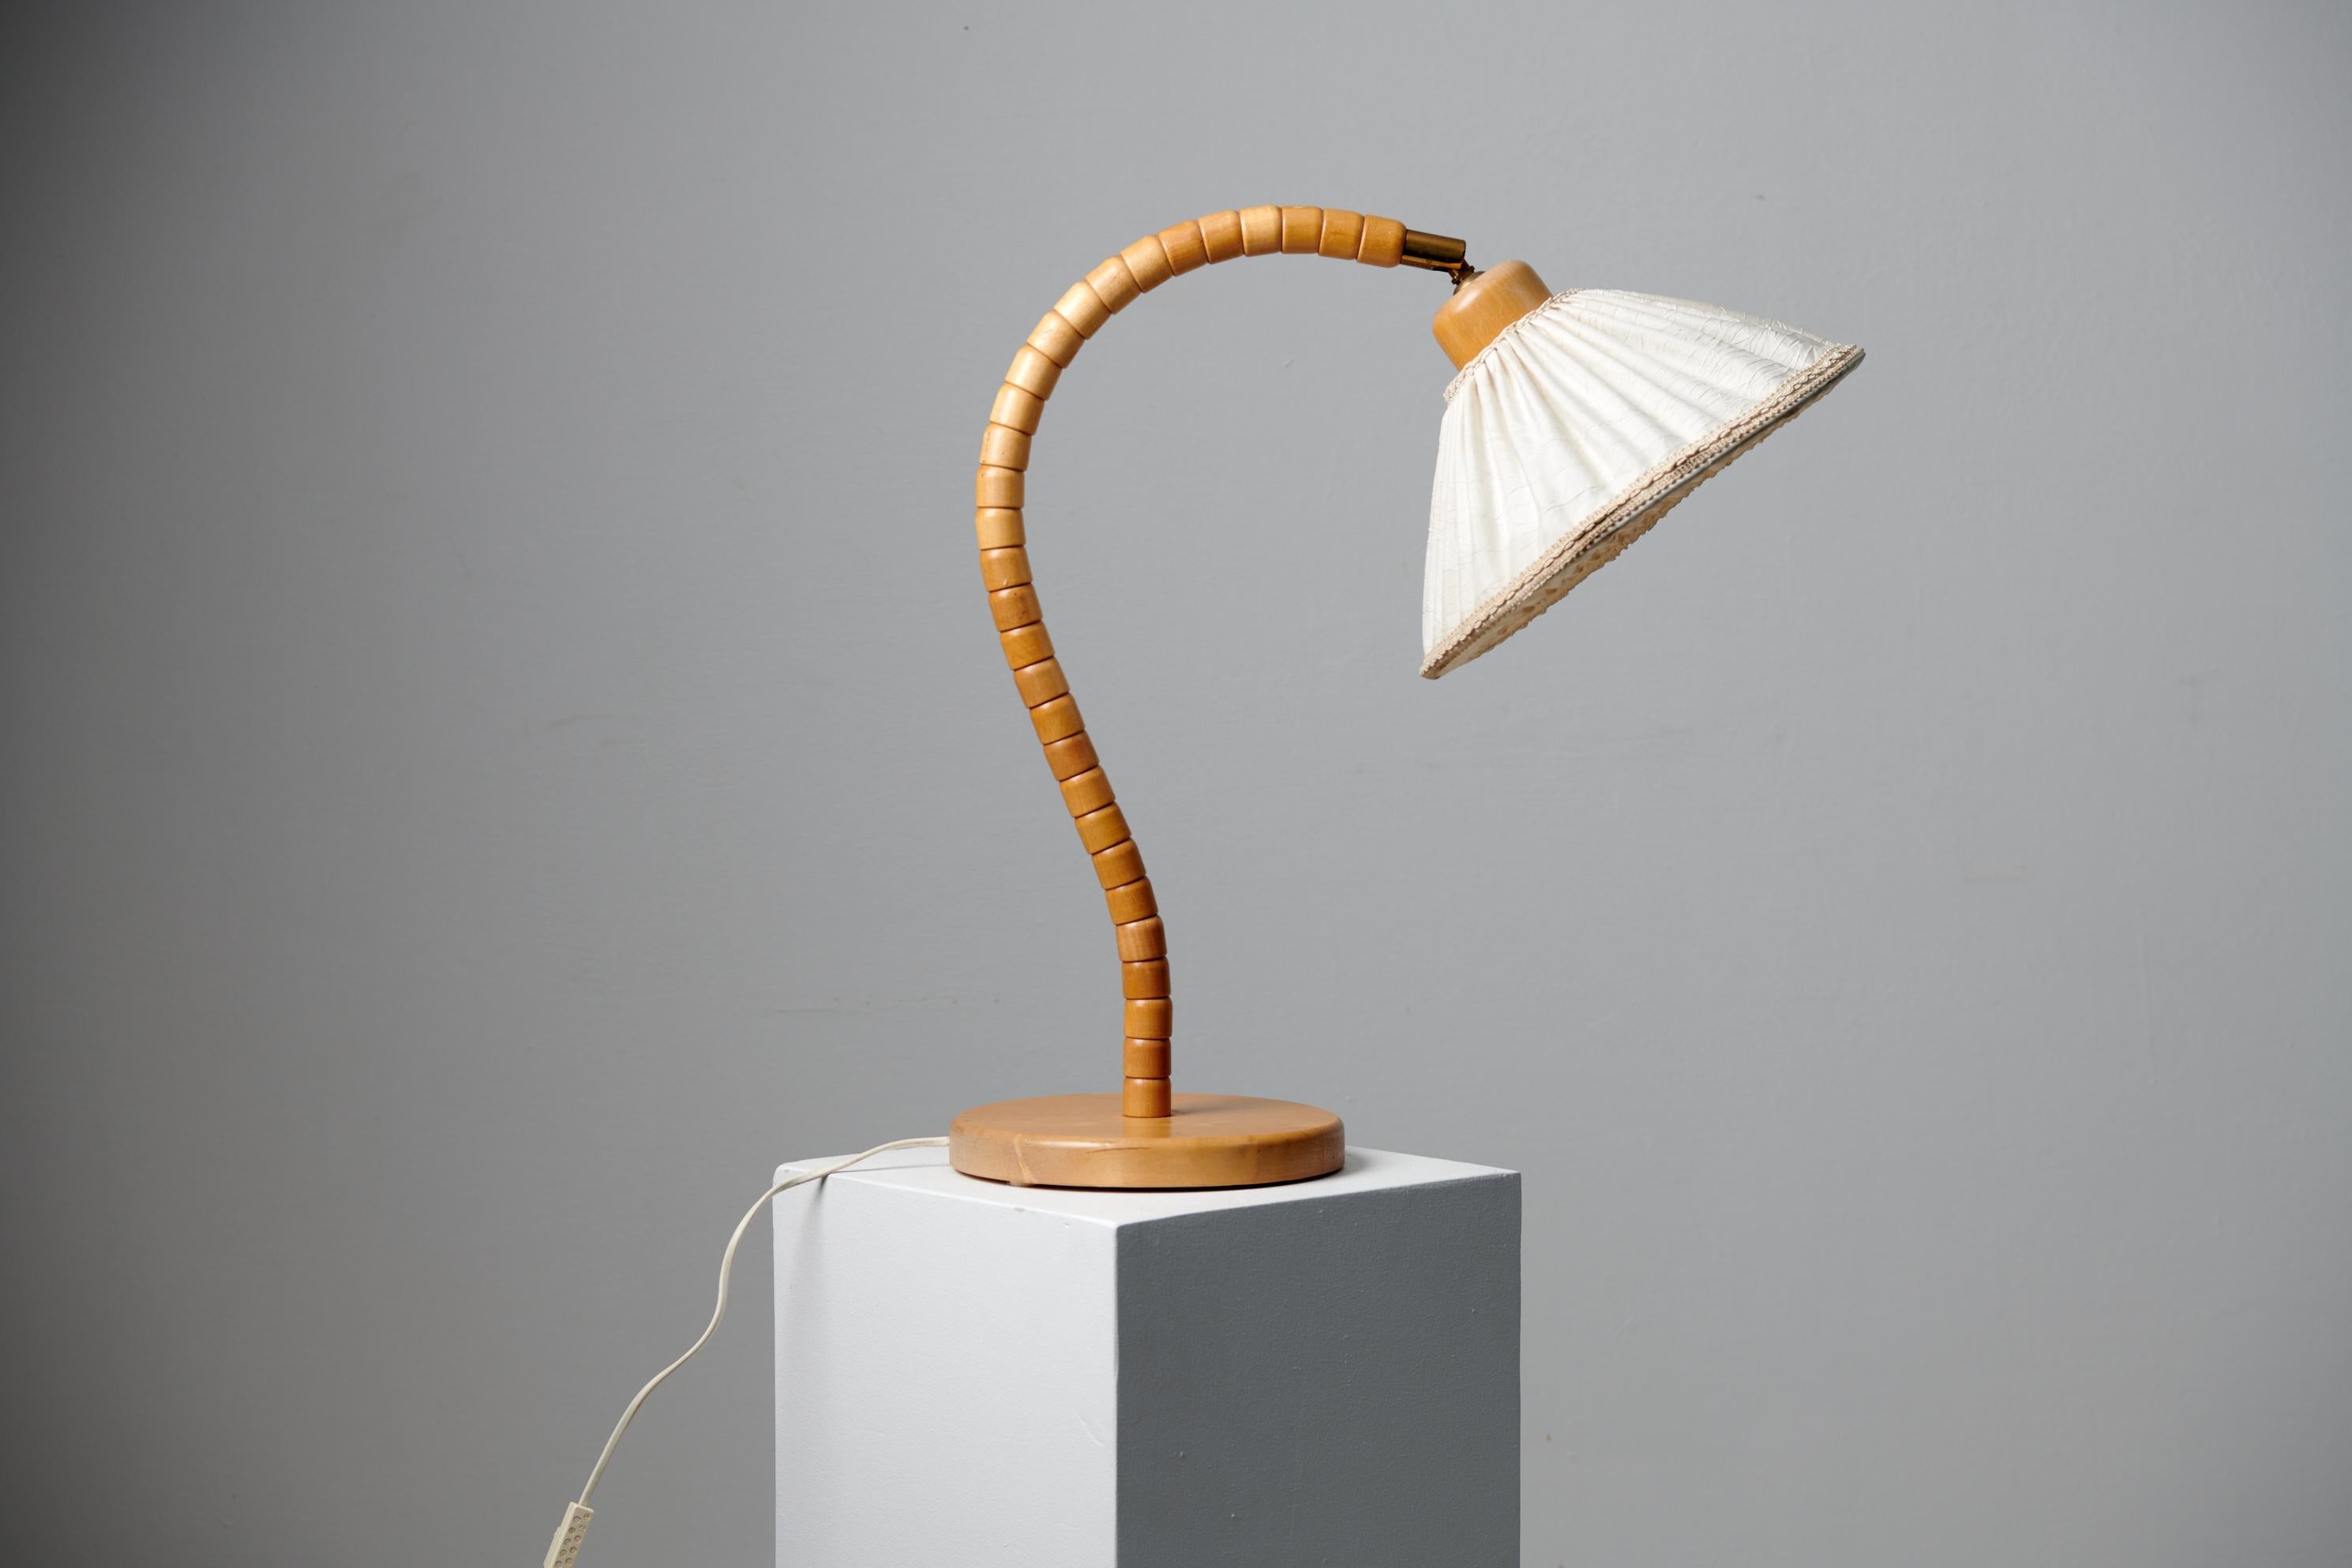 Lampe de table moderne Scandinavian par Markslöjd Kinna Suède, avec une marque de fabricant en dessous. La lampe date des années 1960 et a un cadre en bouleau. L'extrémité reliée à l'abat-jour est en laiton et l'abat-jour lui-même est en lin